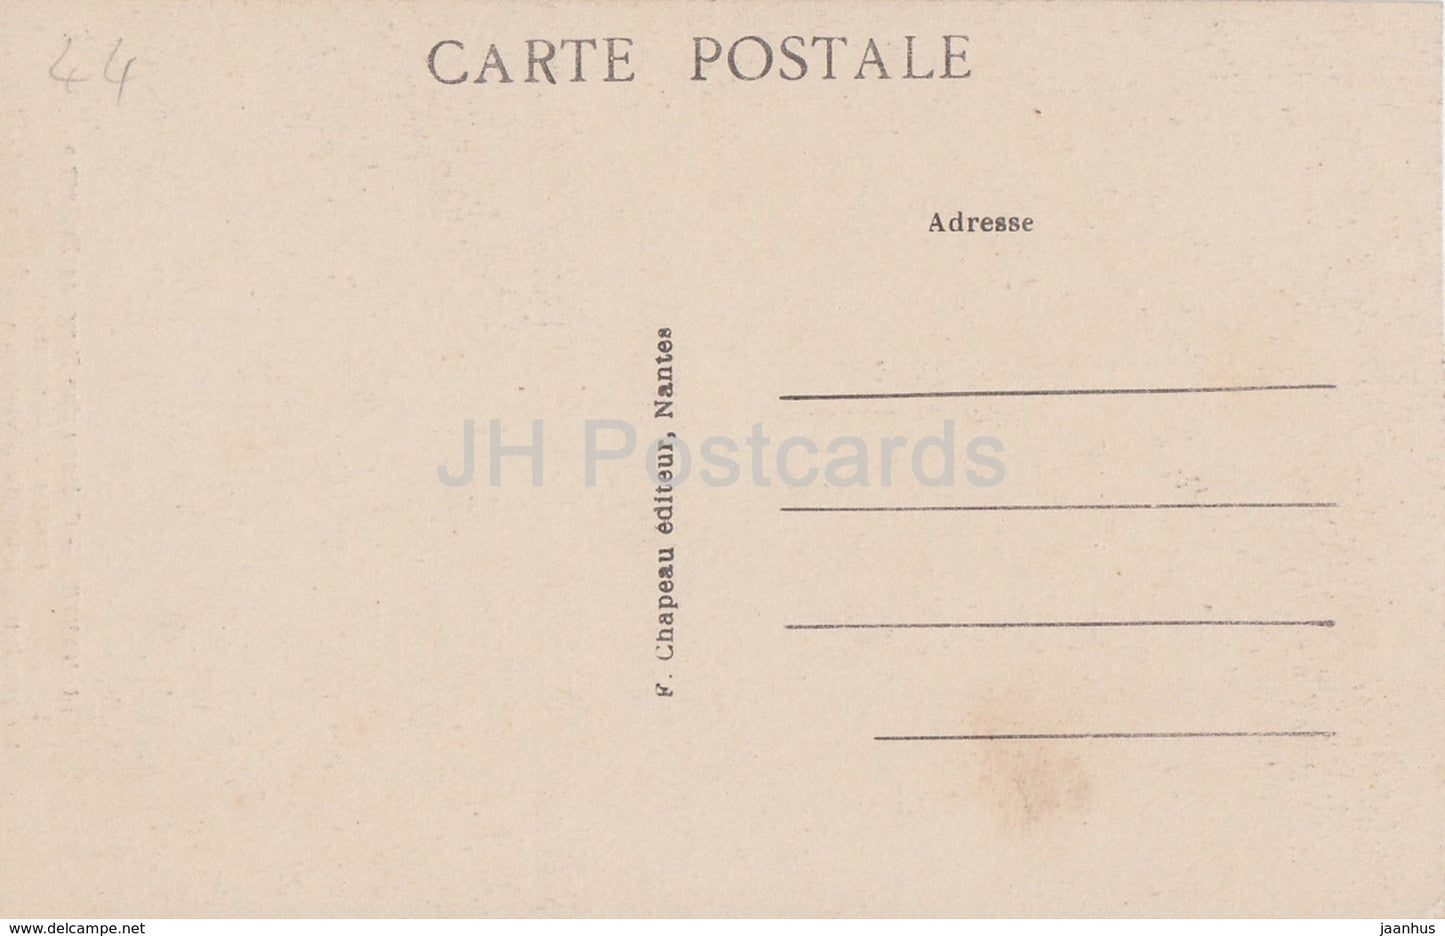 Nantes - Chateau des Ducs de Bretagne - Fenetre de la Chambre - Schloss - 16 - alte Postkarte - Frankreich - unbenutzt